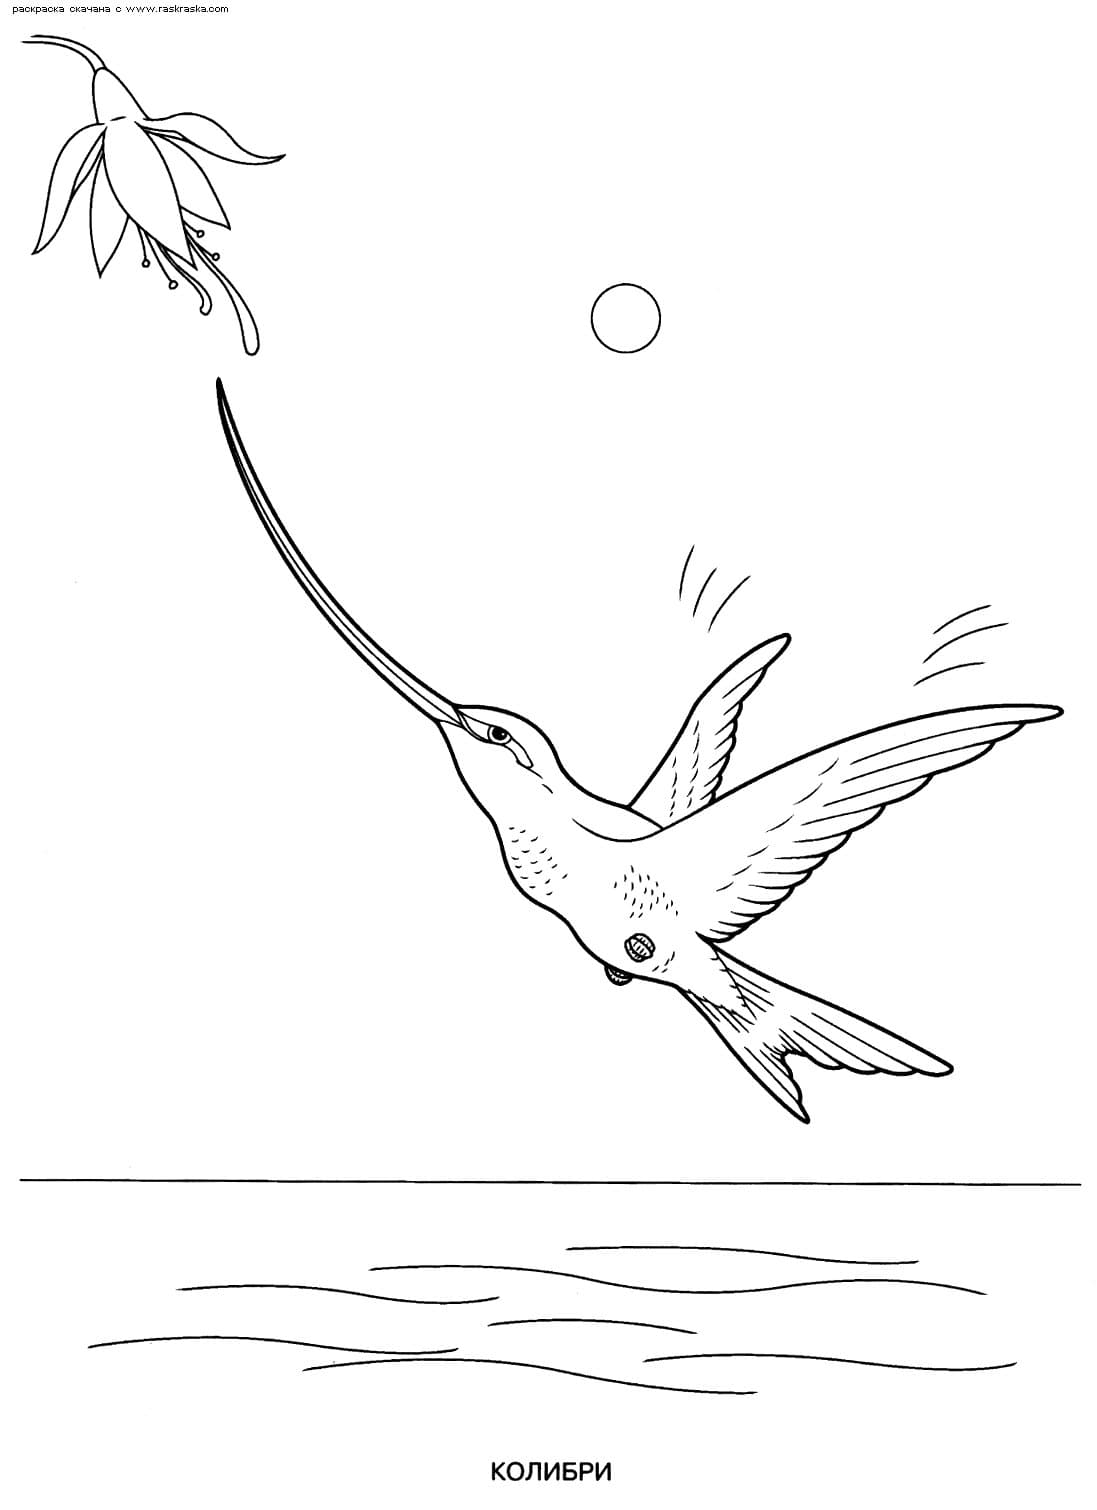 Колибри с длинным носом